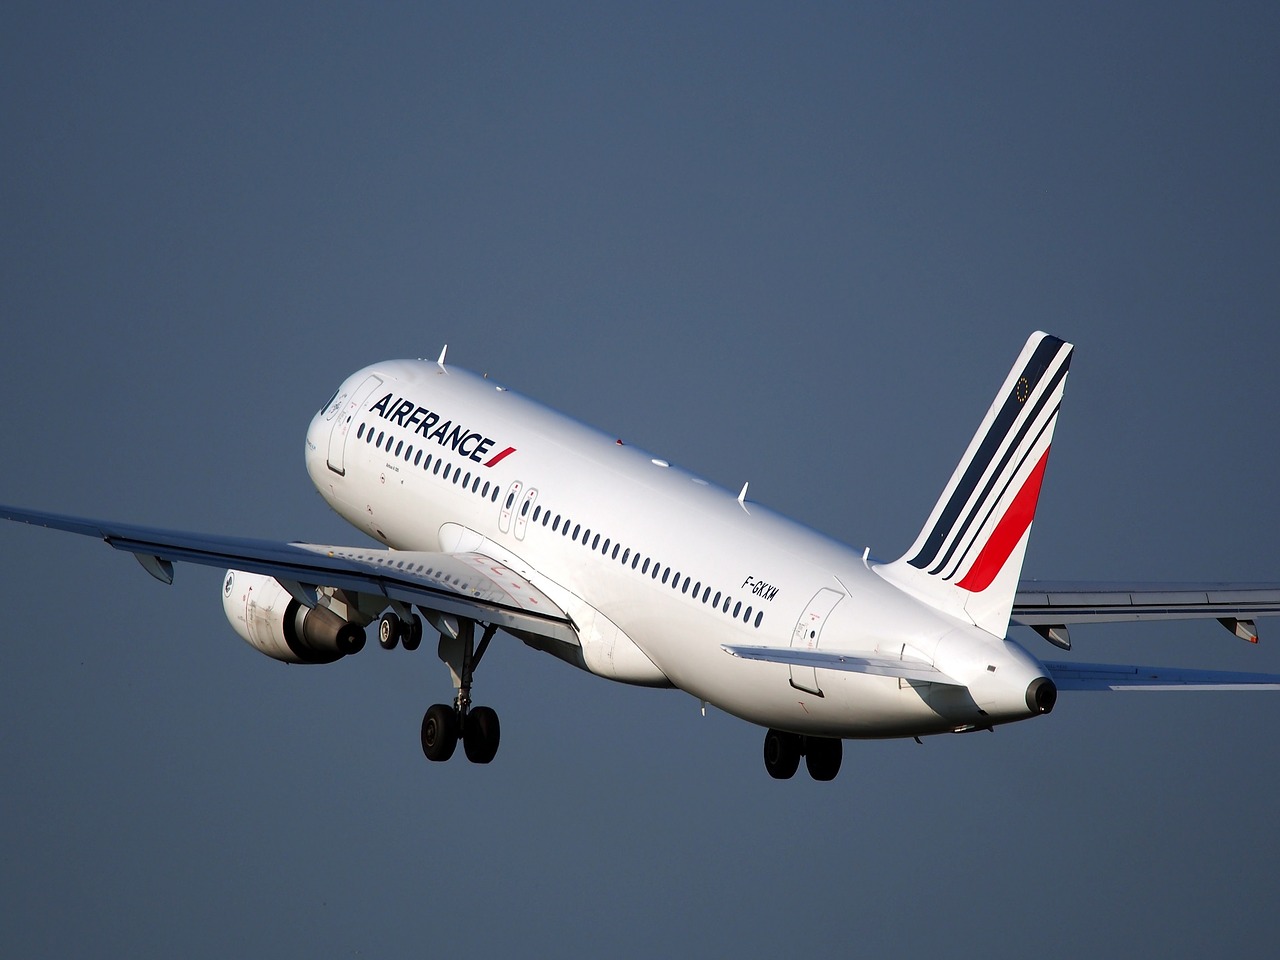 Les compagnies aériennes françaises veulent des garanties pour l’avenir